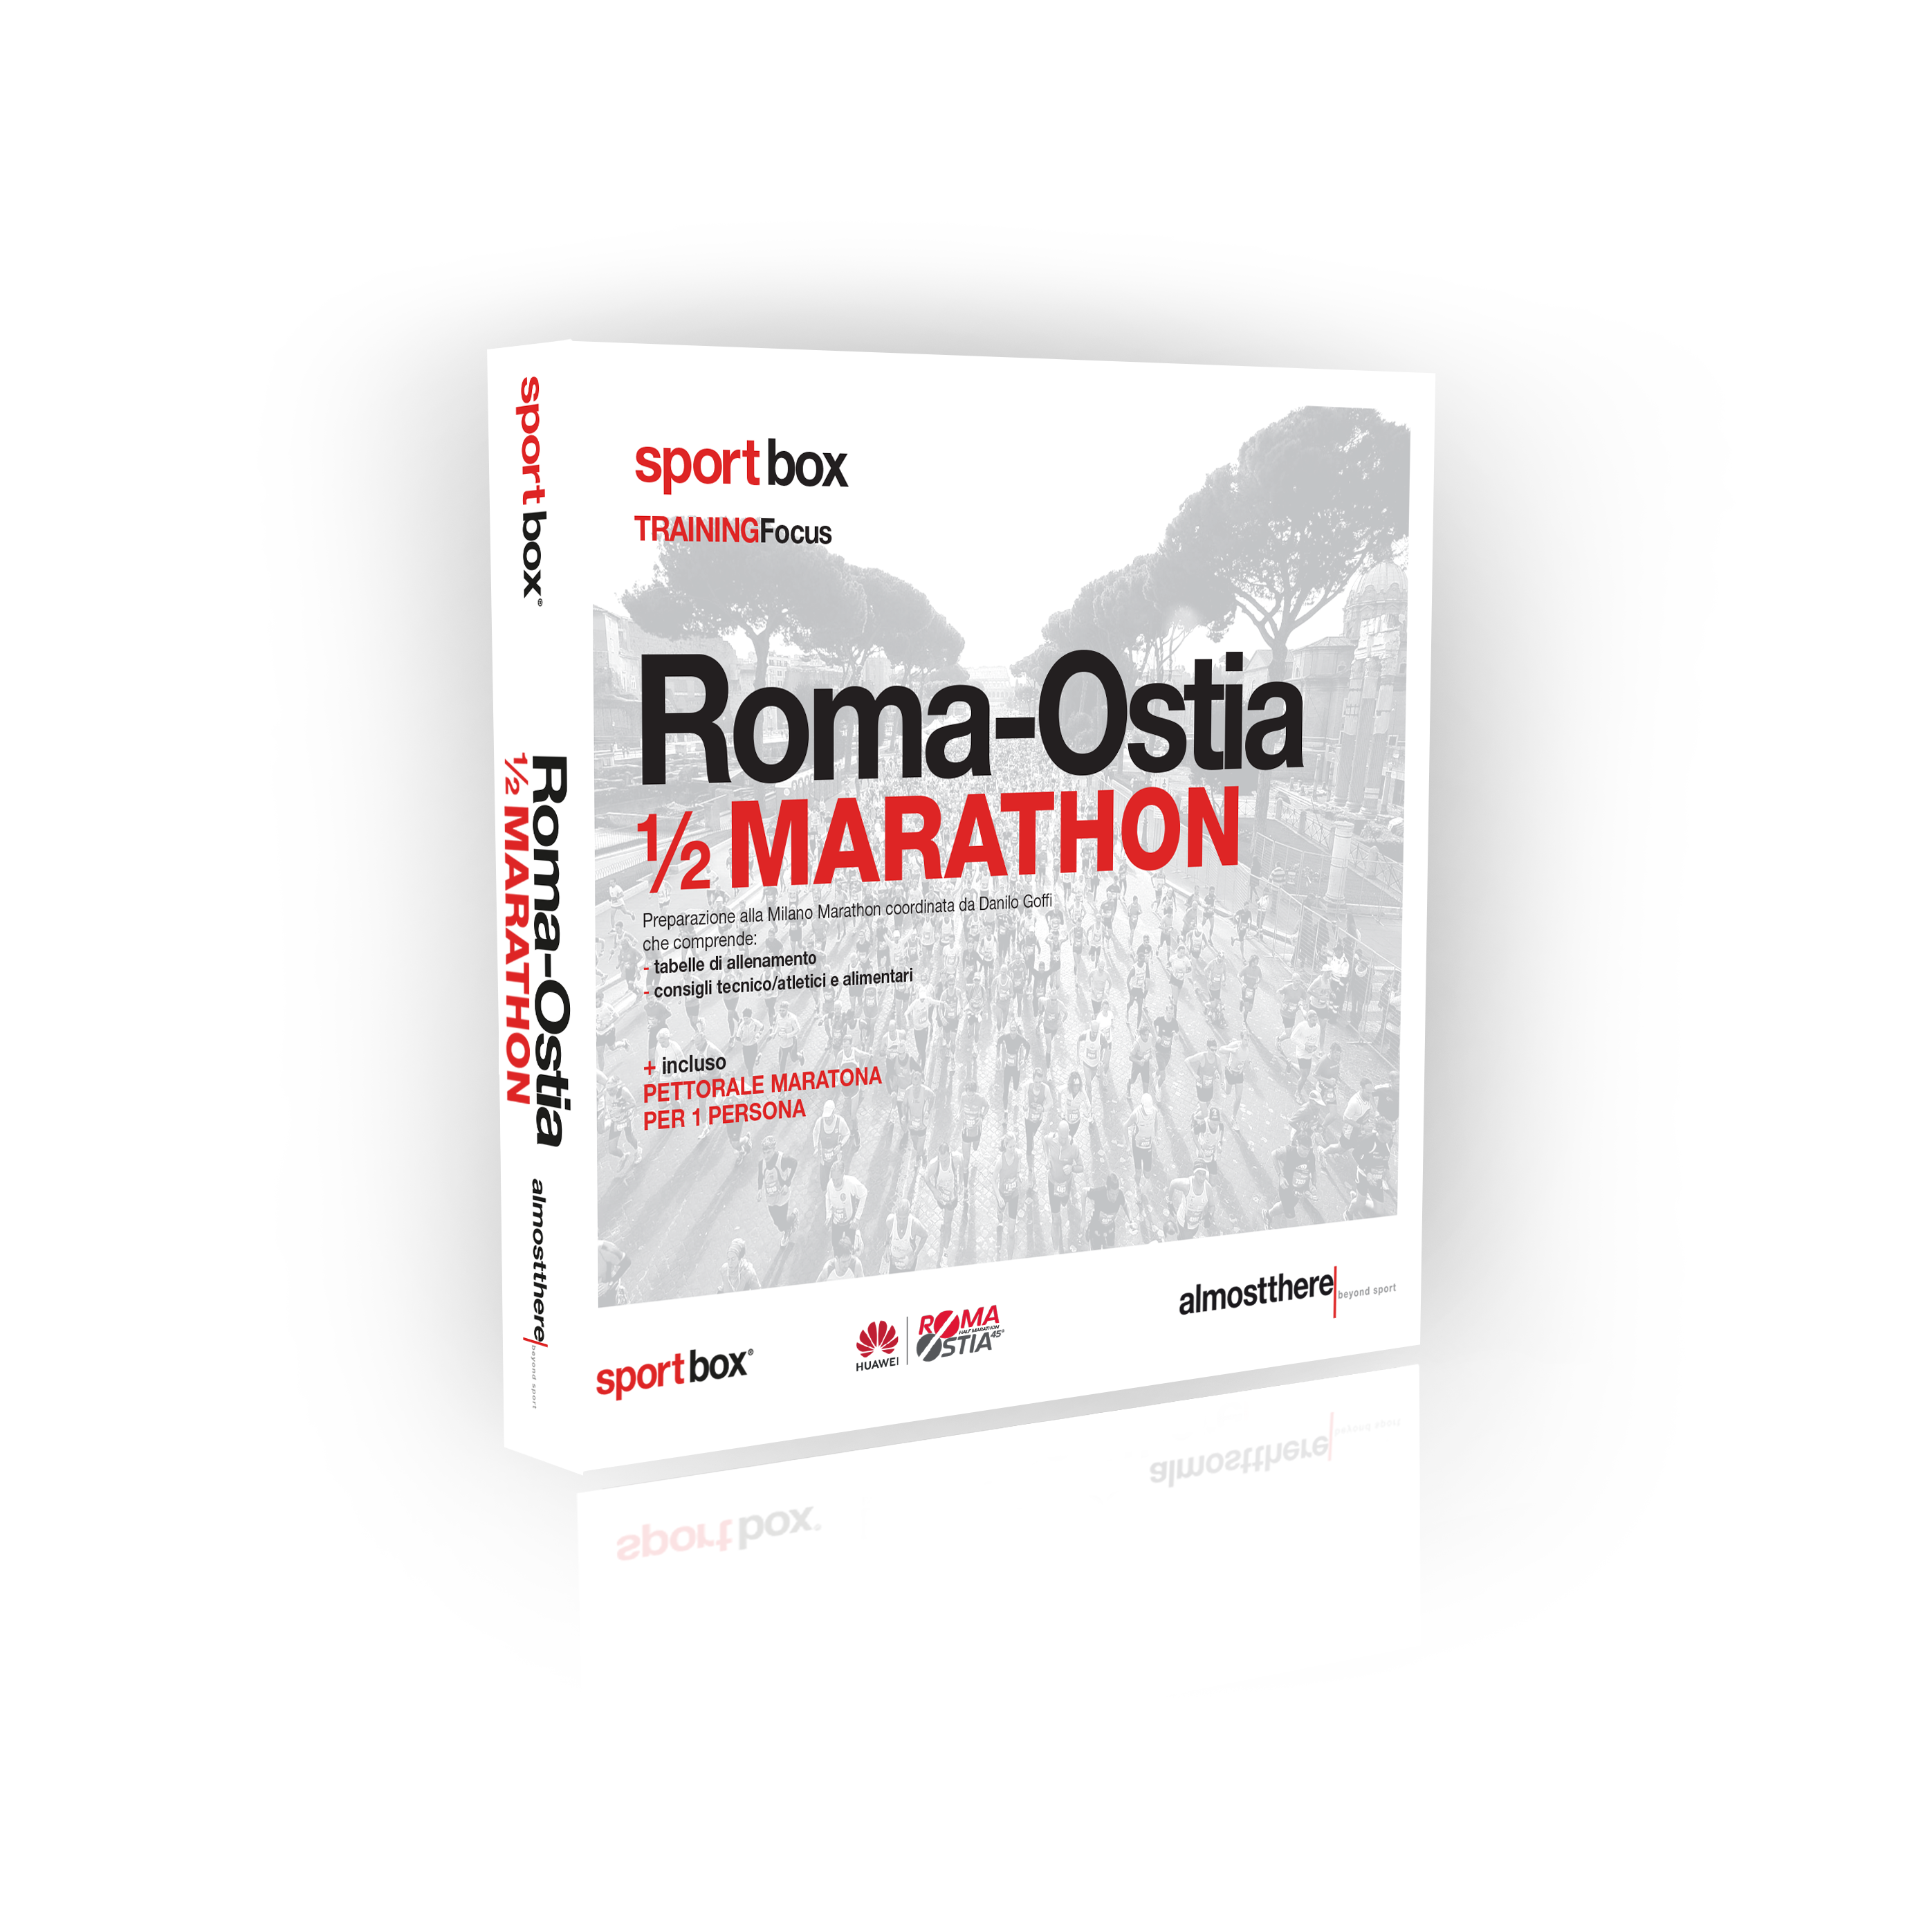 Sportbox training Focus Roma-Ostia half Marathon 2019